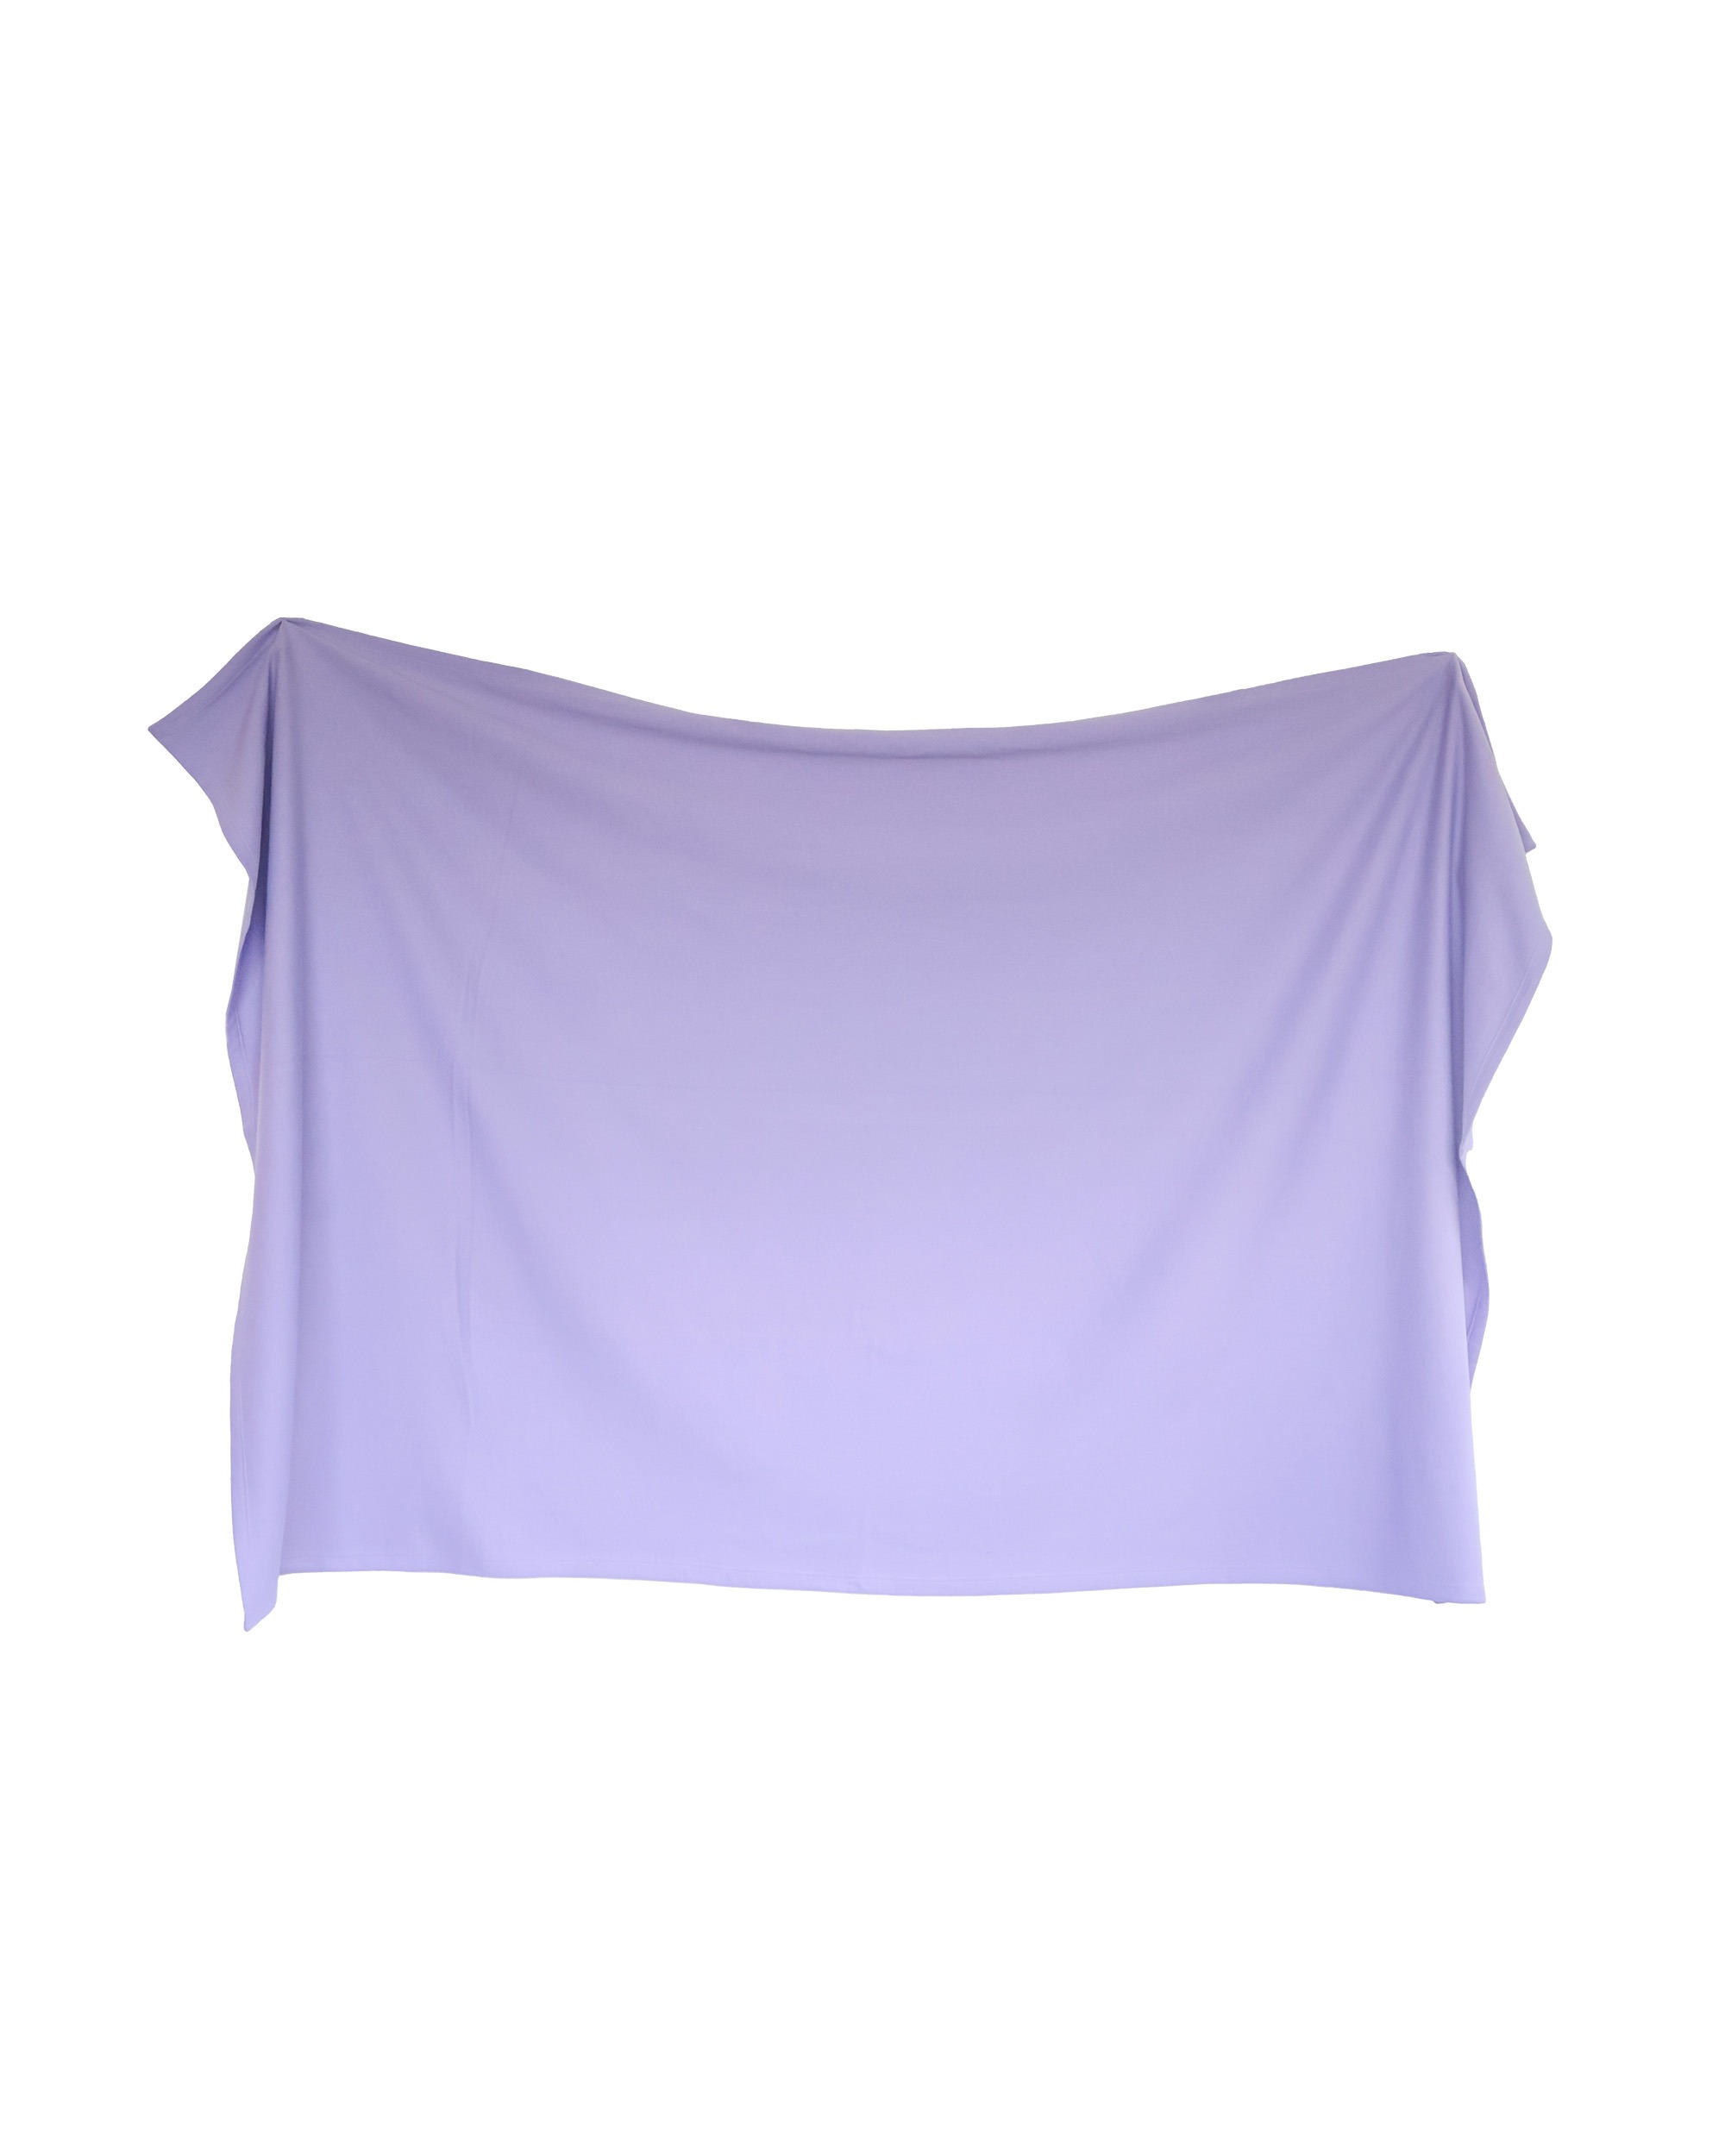 Enza® 61079 Oversized 11 oz. Sweatshirt Blanket